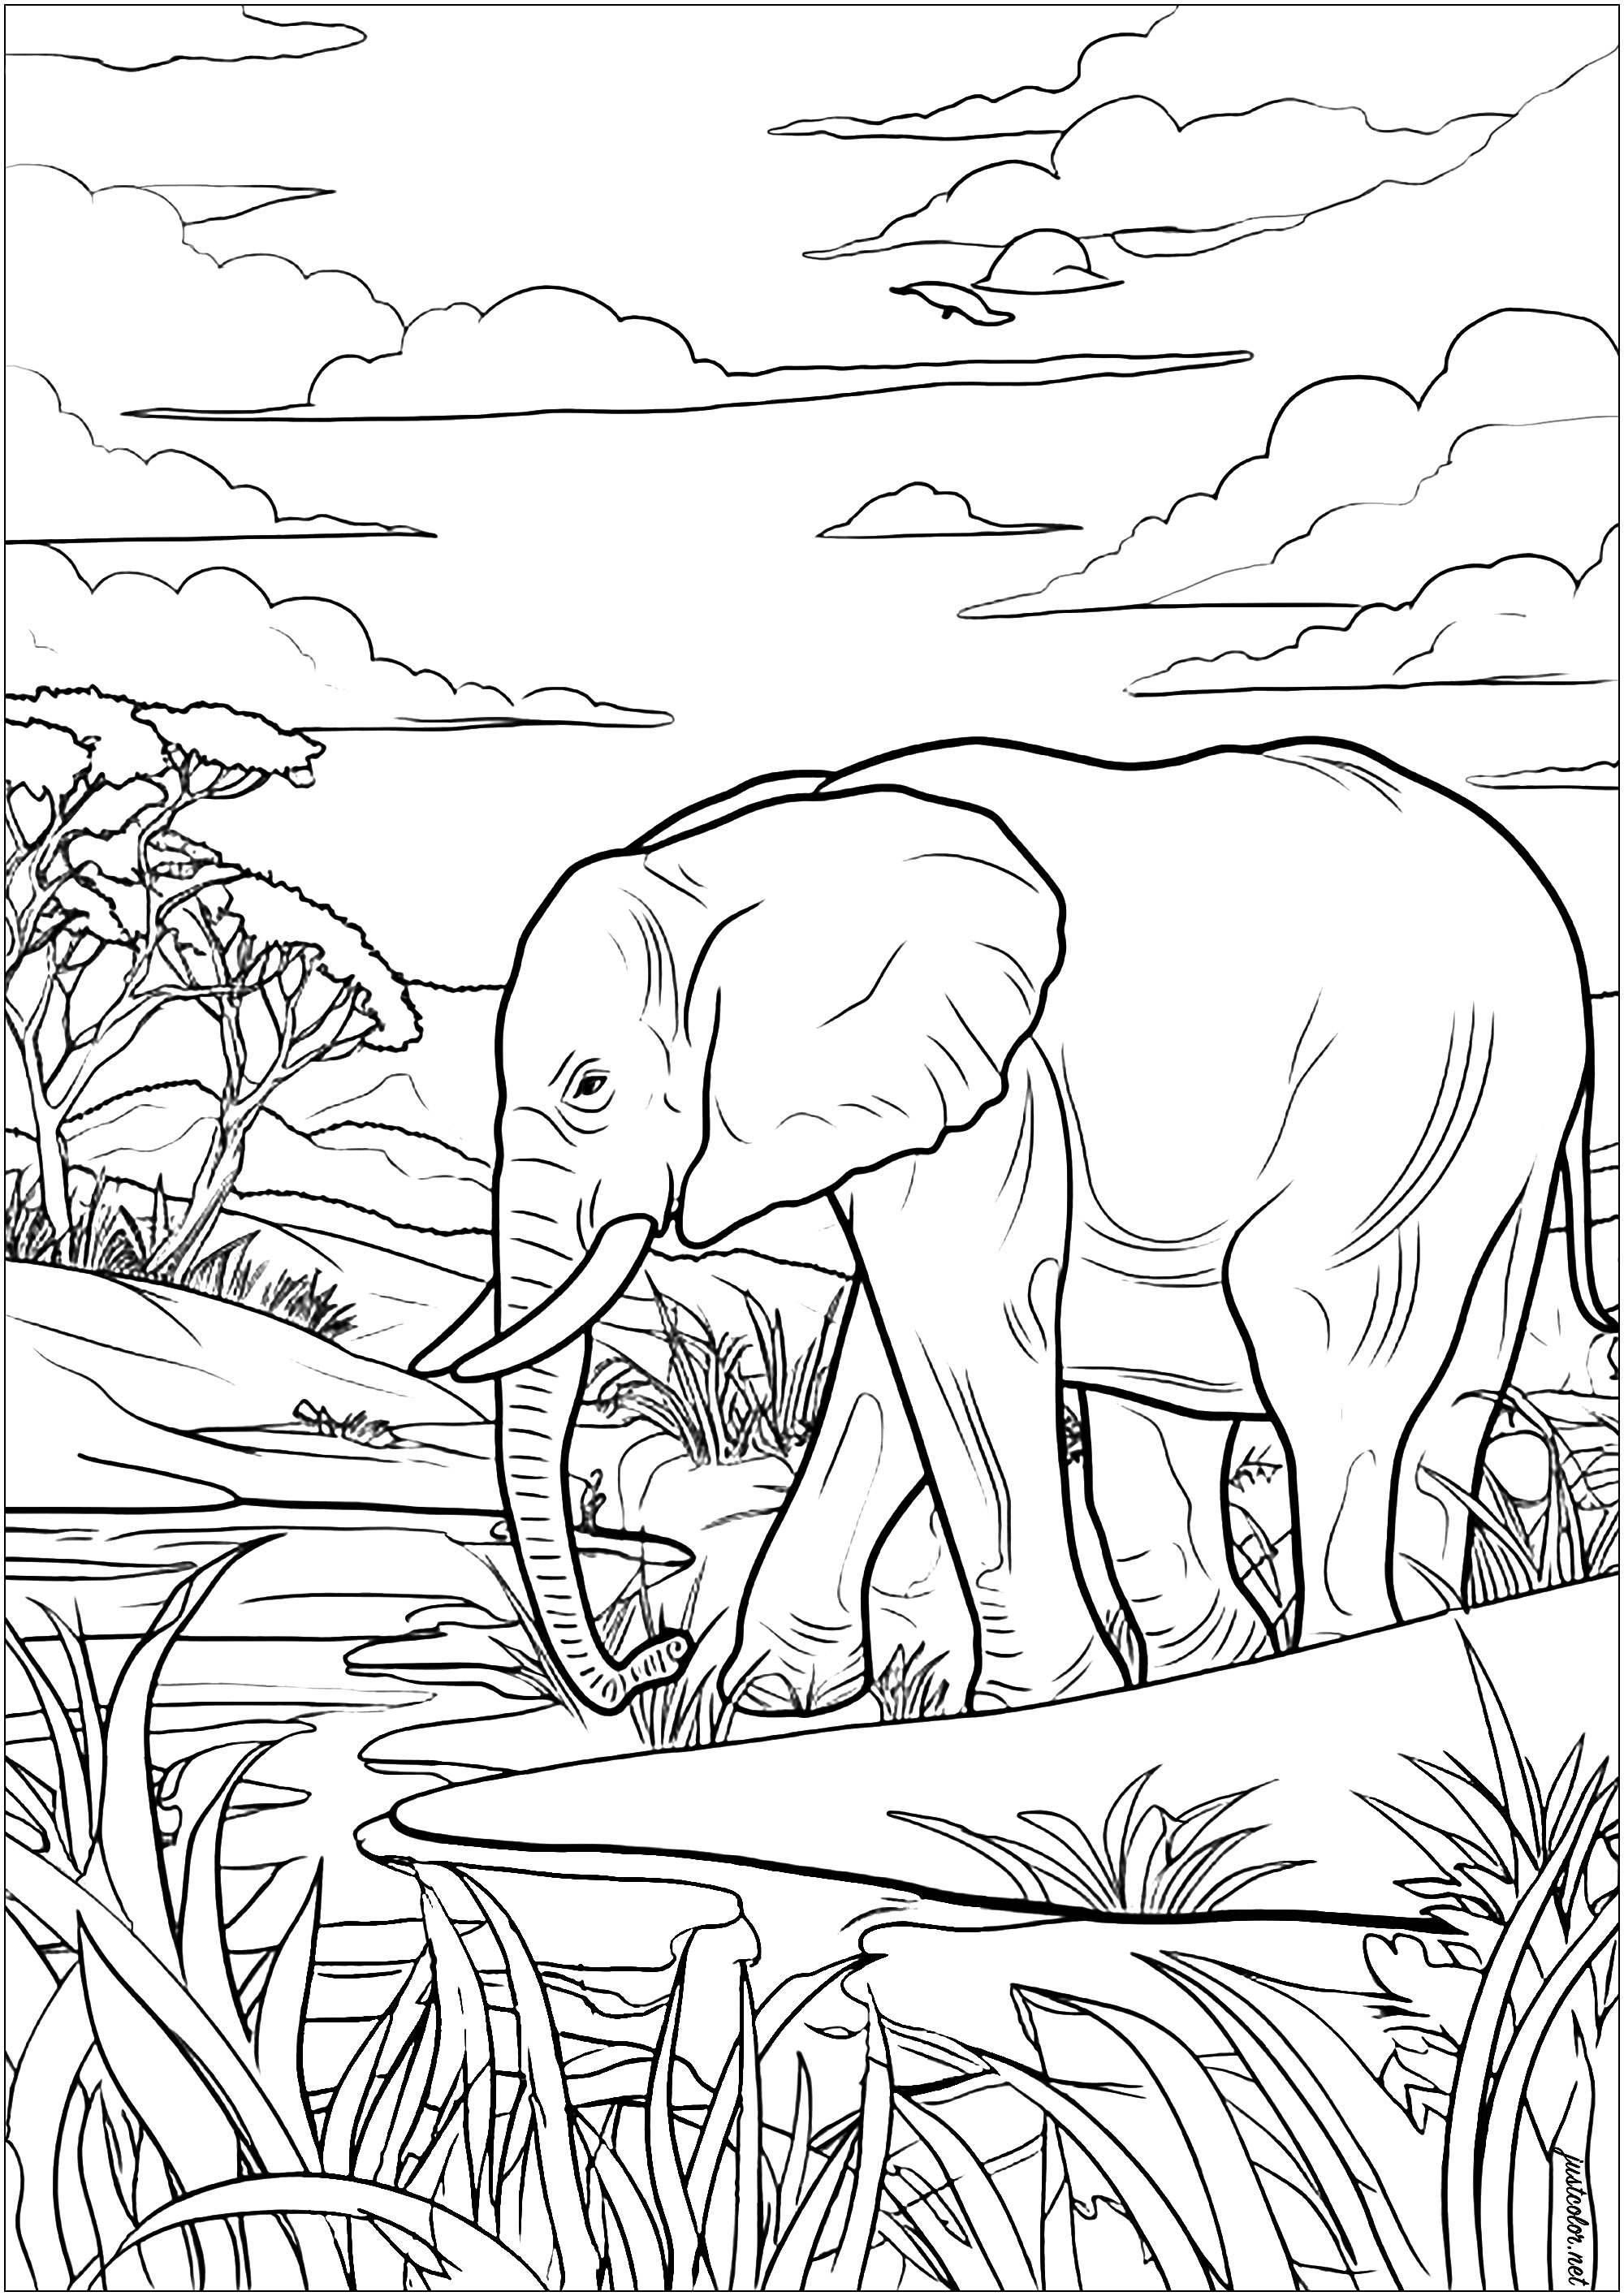 Coloração de um elefante velho que se move pacificamente na savana africana. Uma página para colorir cheia de pormenores, muito tranquila. Este sábio paquiderme avança majestosamente, observando as árvores e as ervas que o rodeiam.